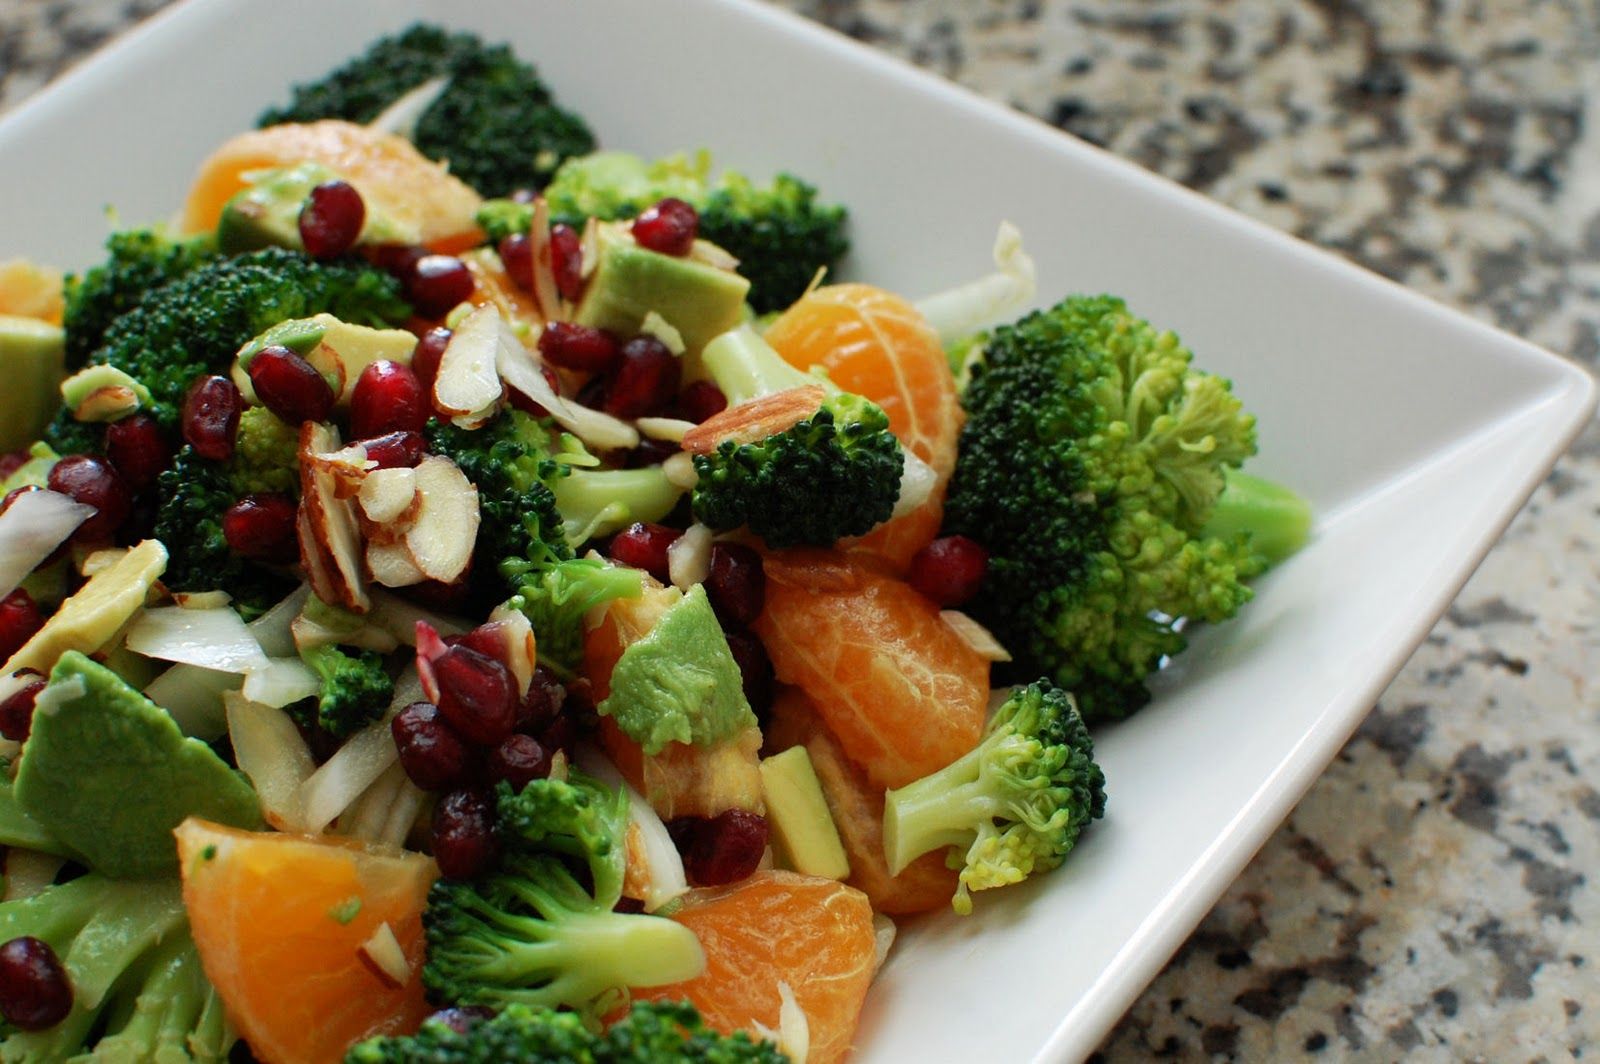 Broccoli and Fruit Salad